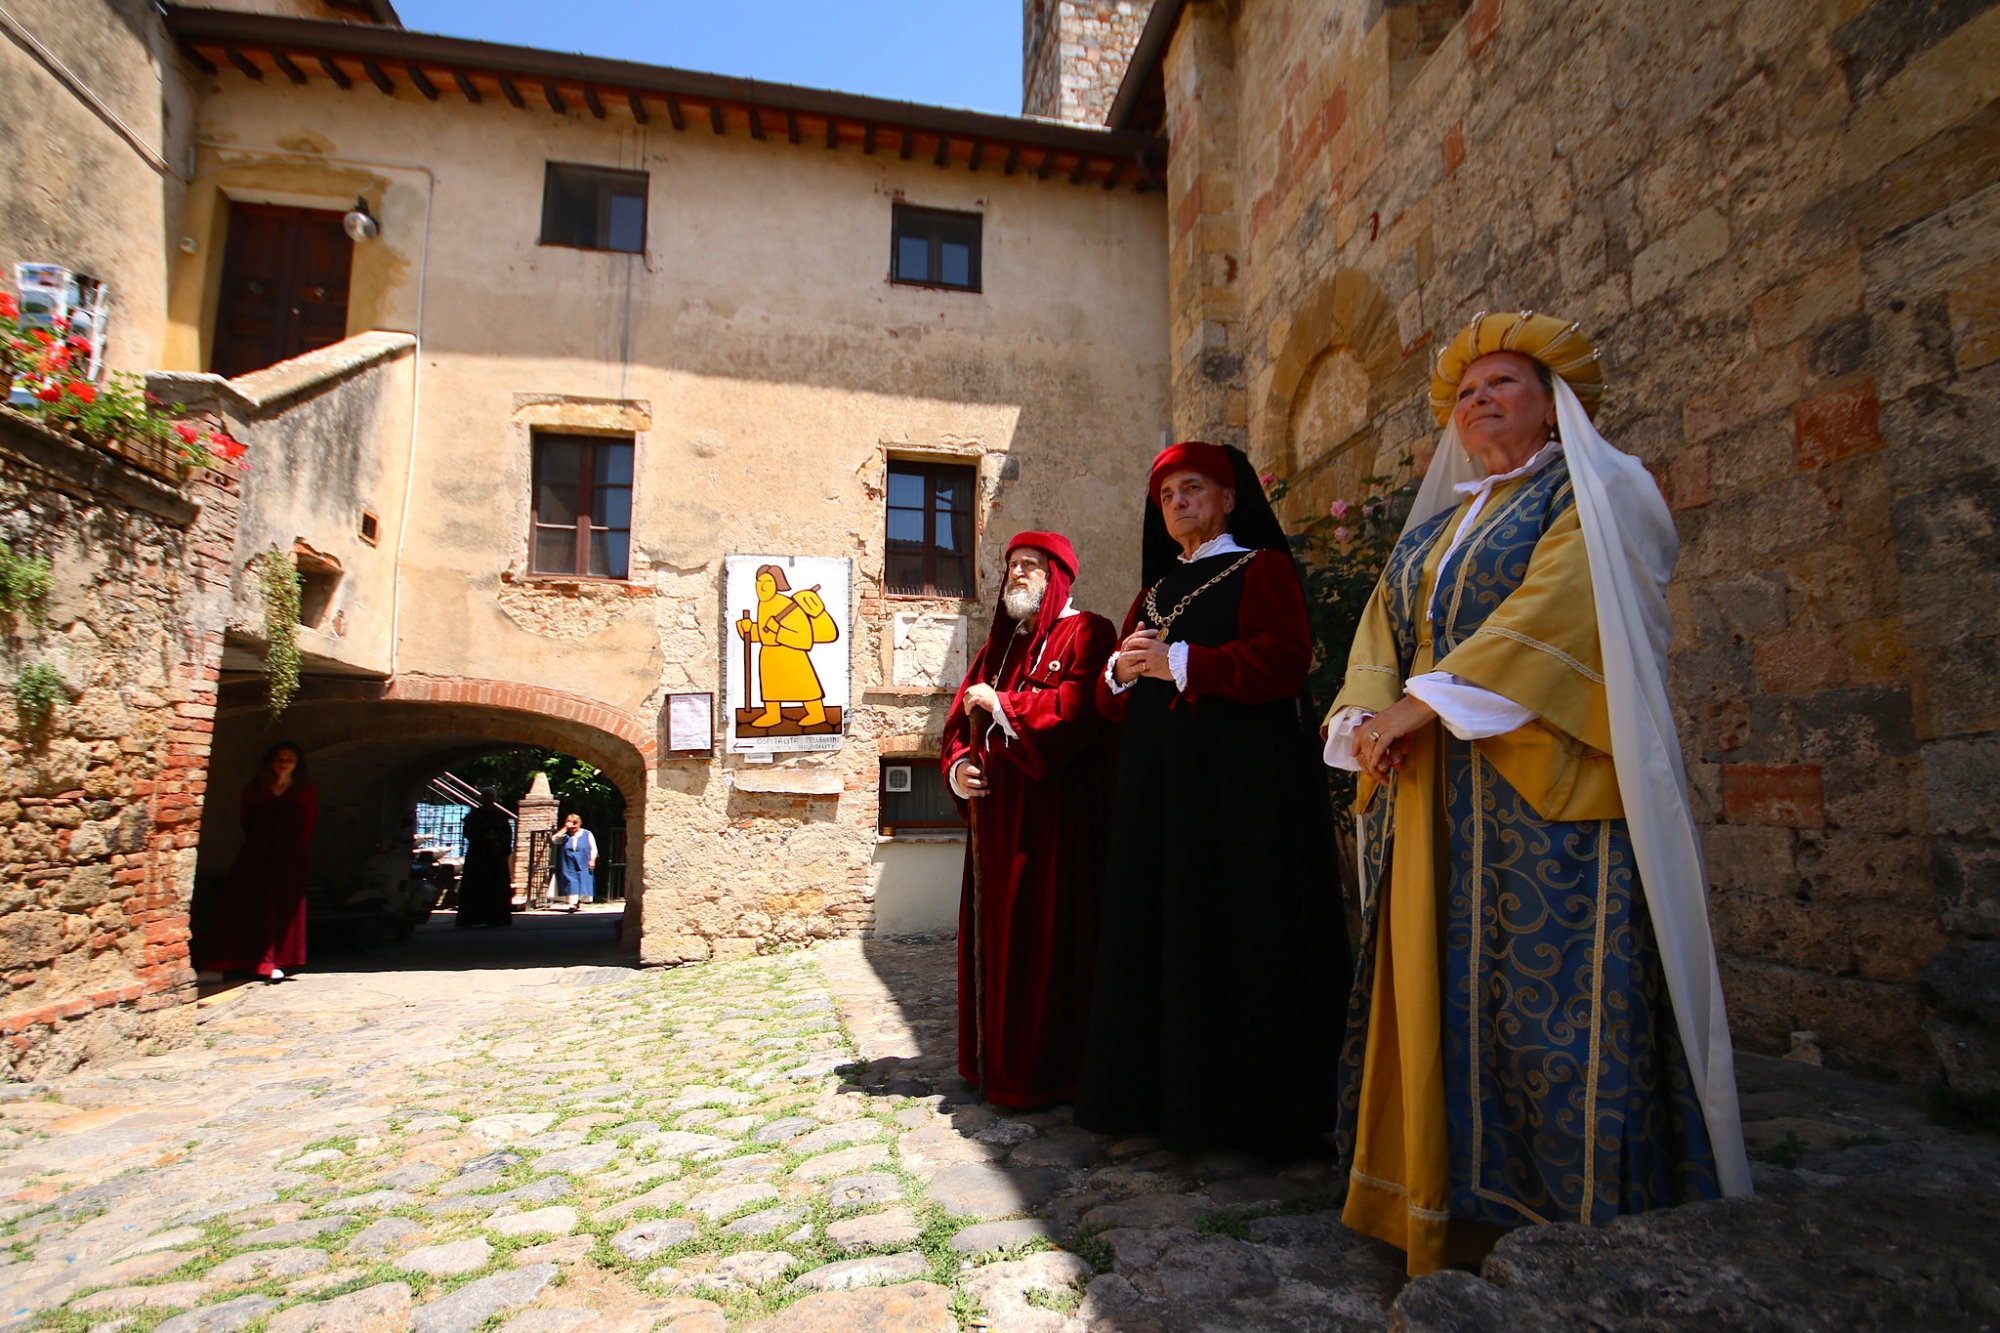 Medieval Festival in Monteriggioni